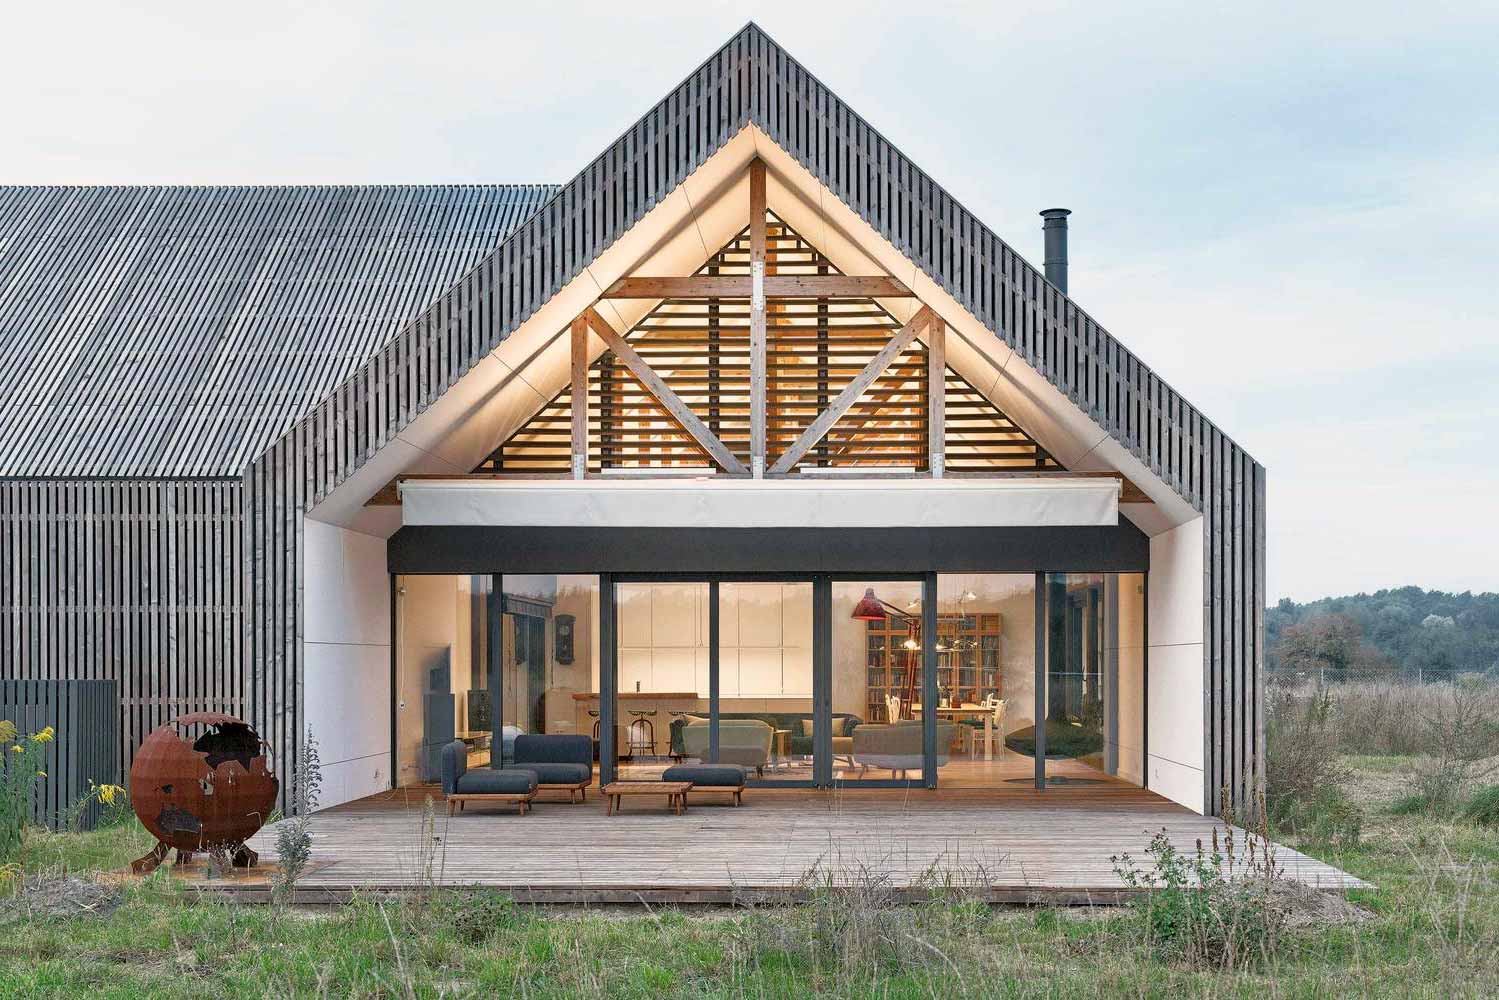 Extravagant idea of an open facade of a modern house